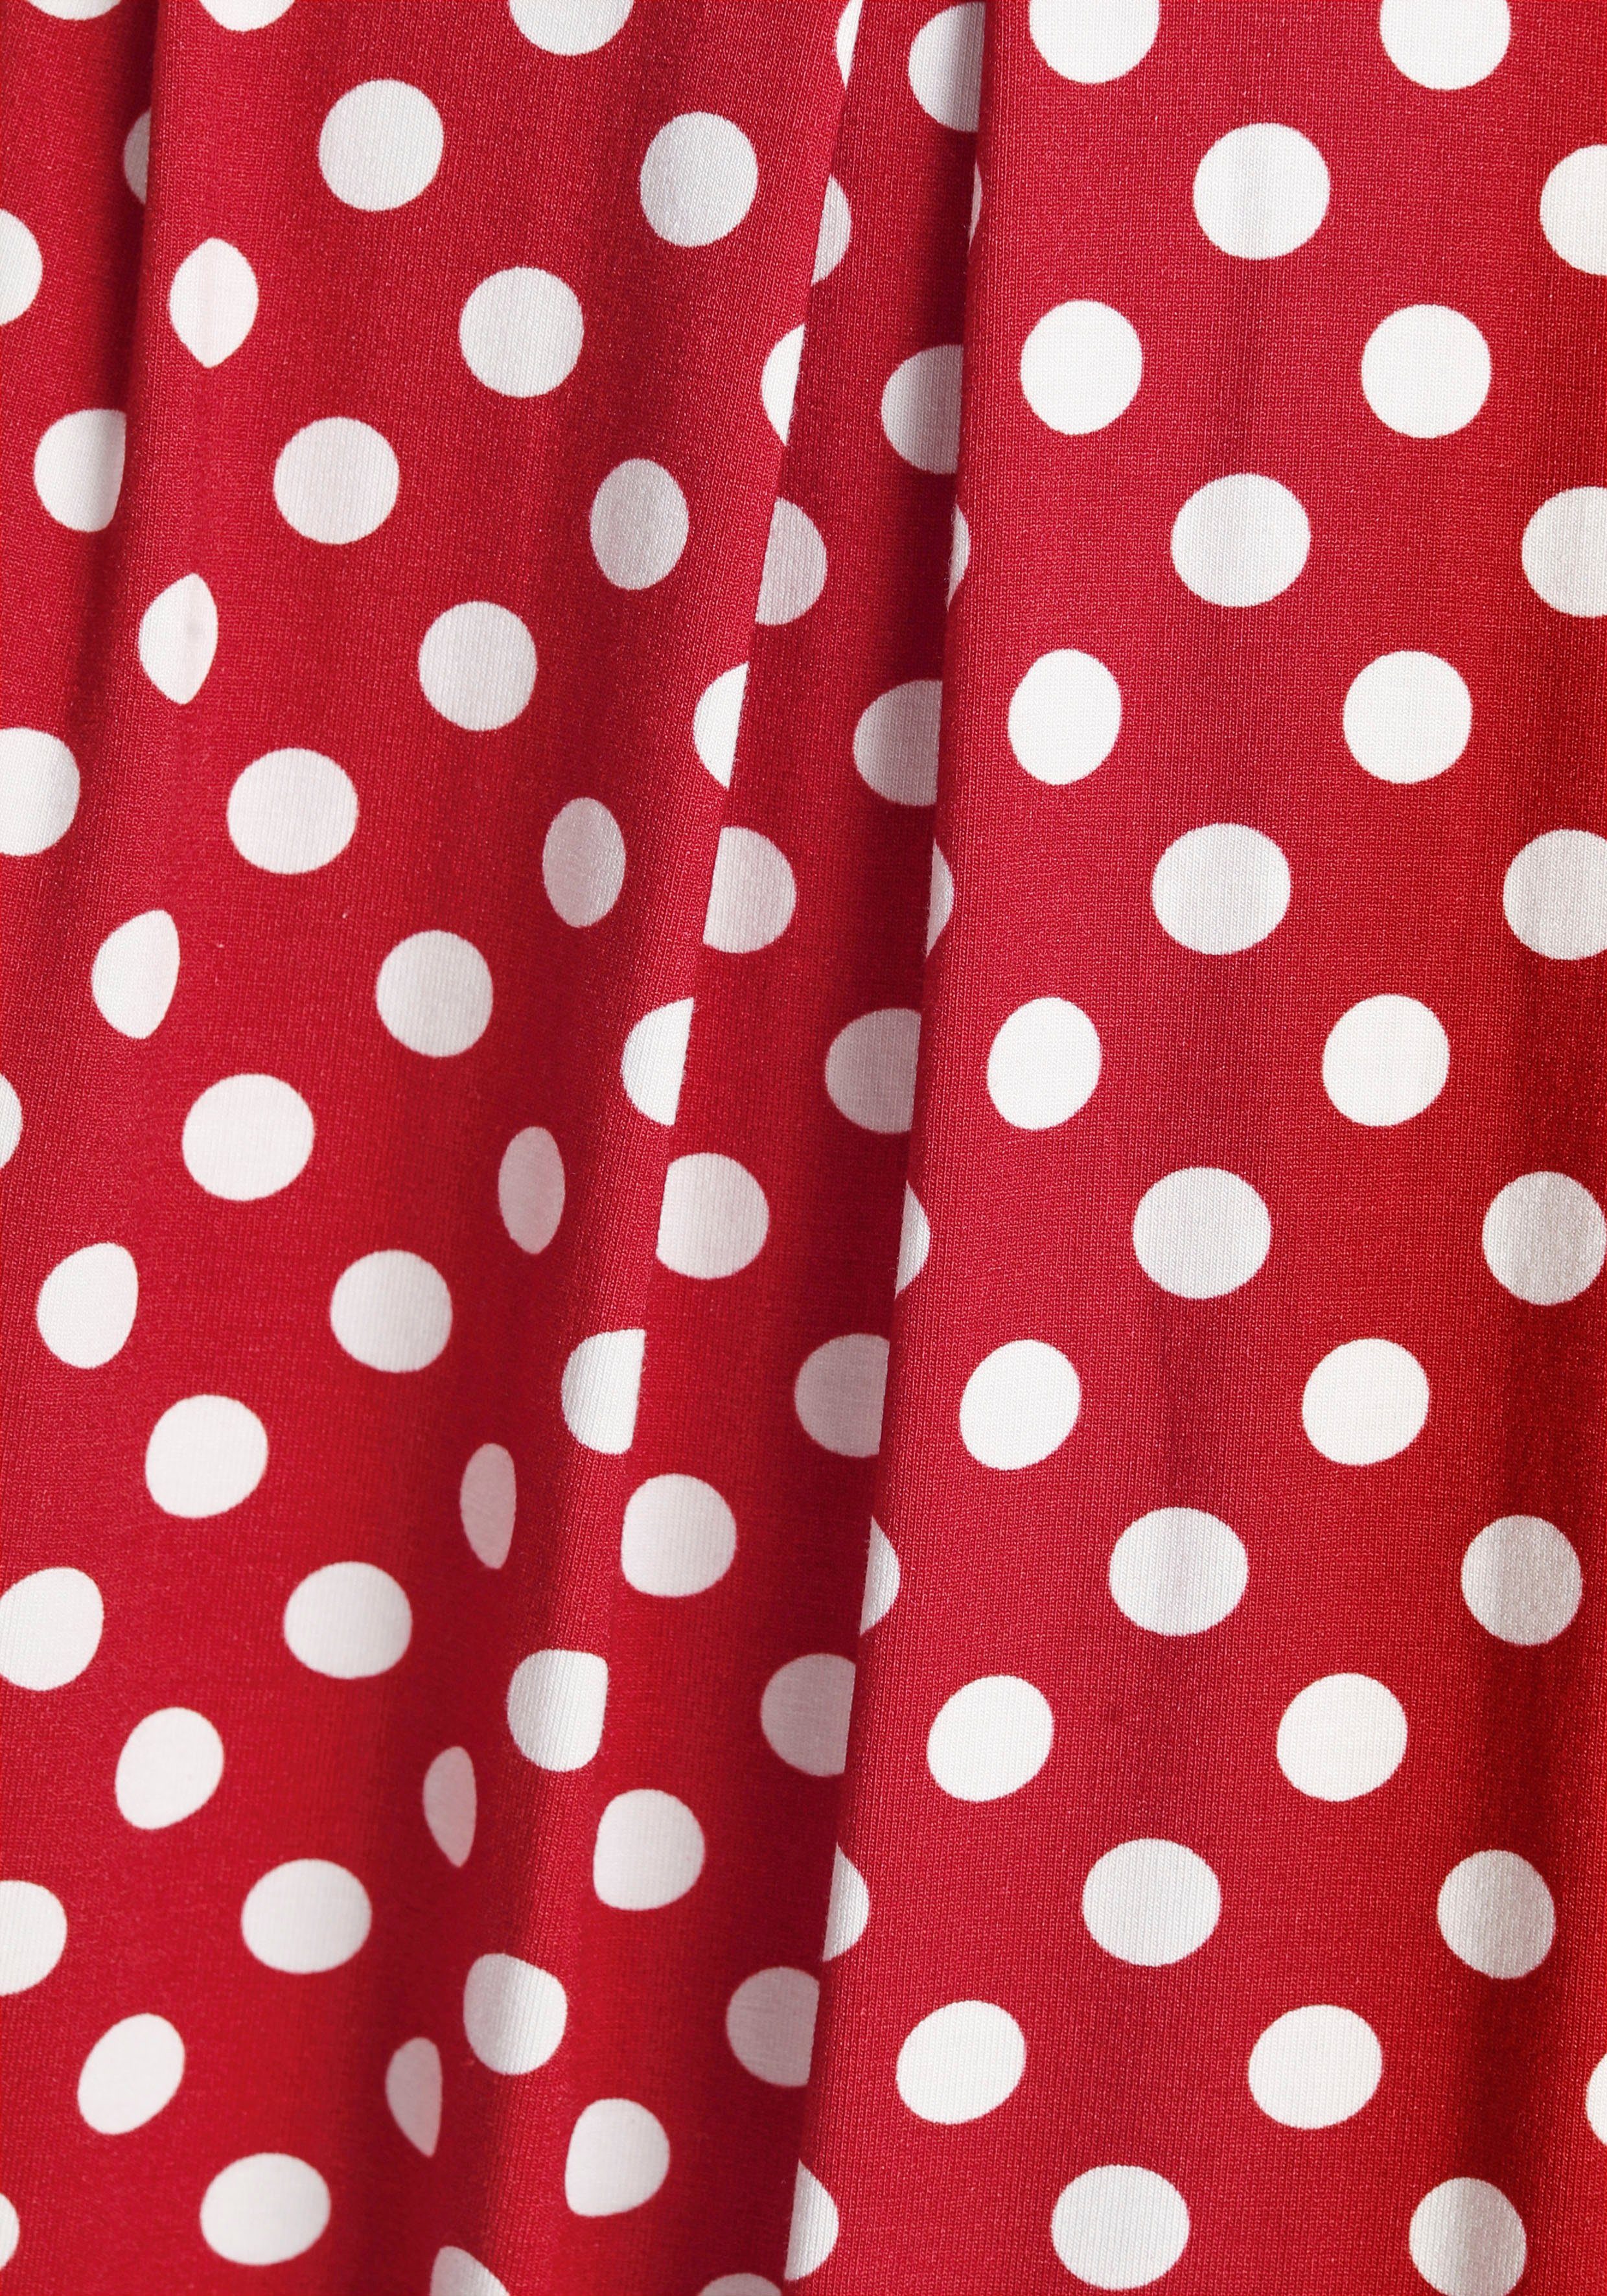 Boysen's Jerseykleid mit süßem Tupfen-Print weiß rot